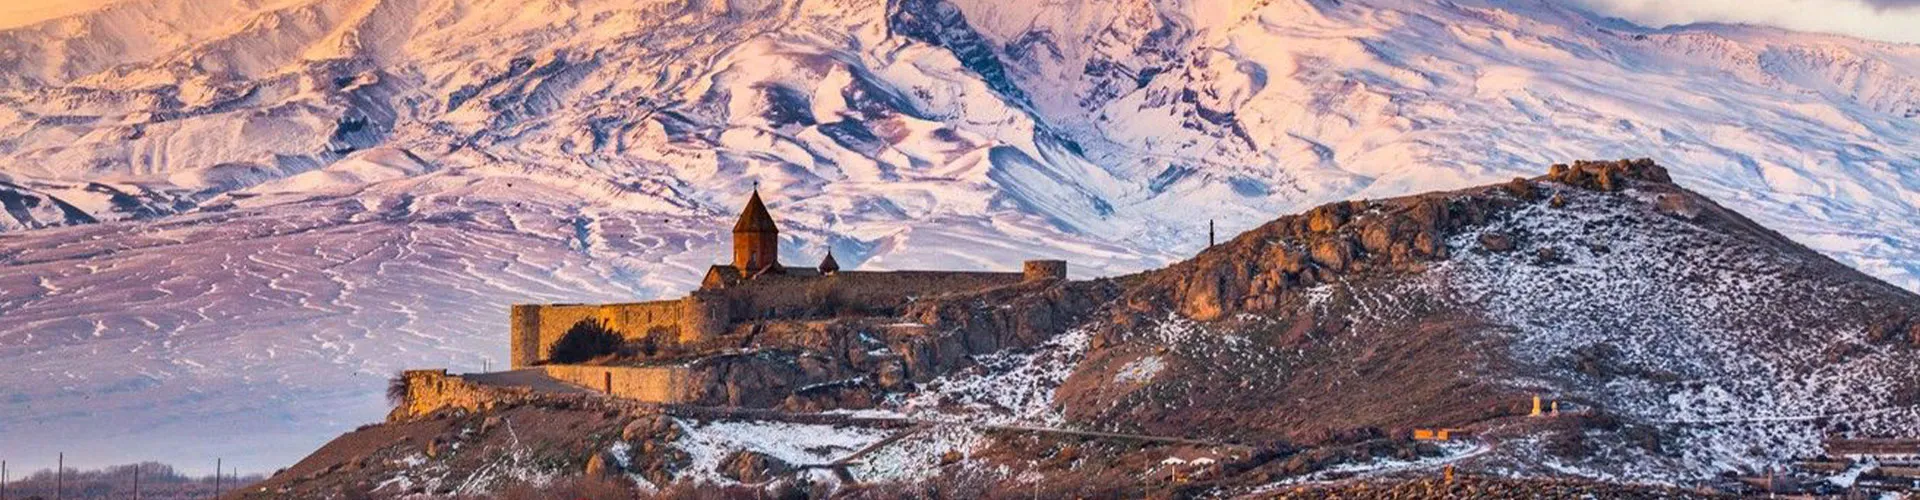 تور ارمنستان تابستان